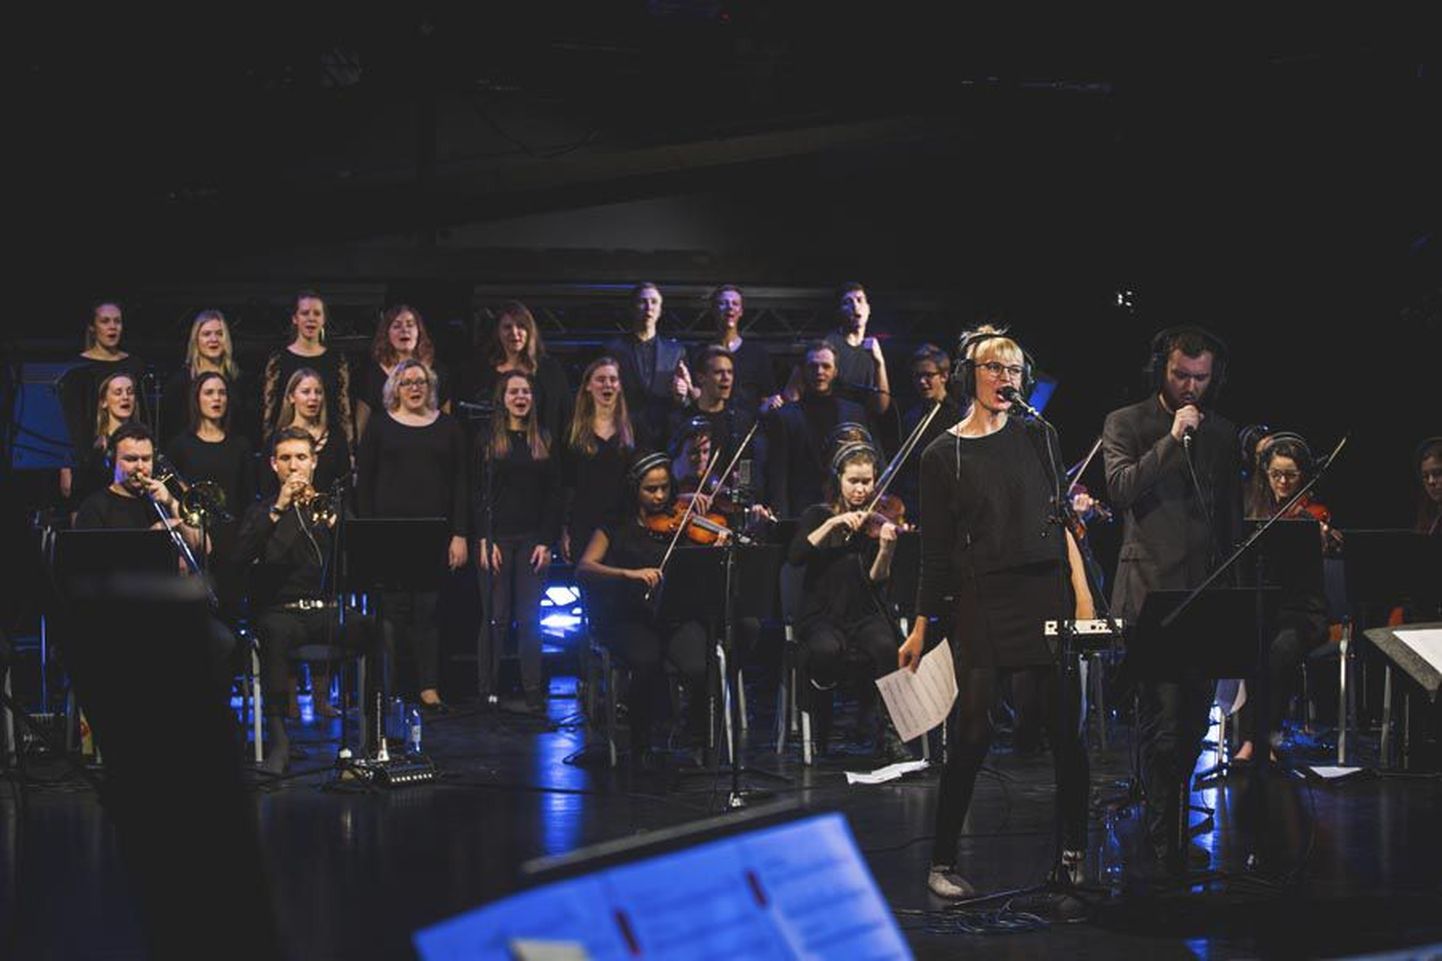 Hetk proovist. Kultuuriakadeemia tudengite projektis lööb kaasa üle poolesaja noore eesti muusiku, kes moodustavad ebastandardse instrumentaal-vokaalansambli.